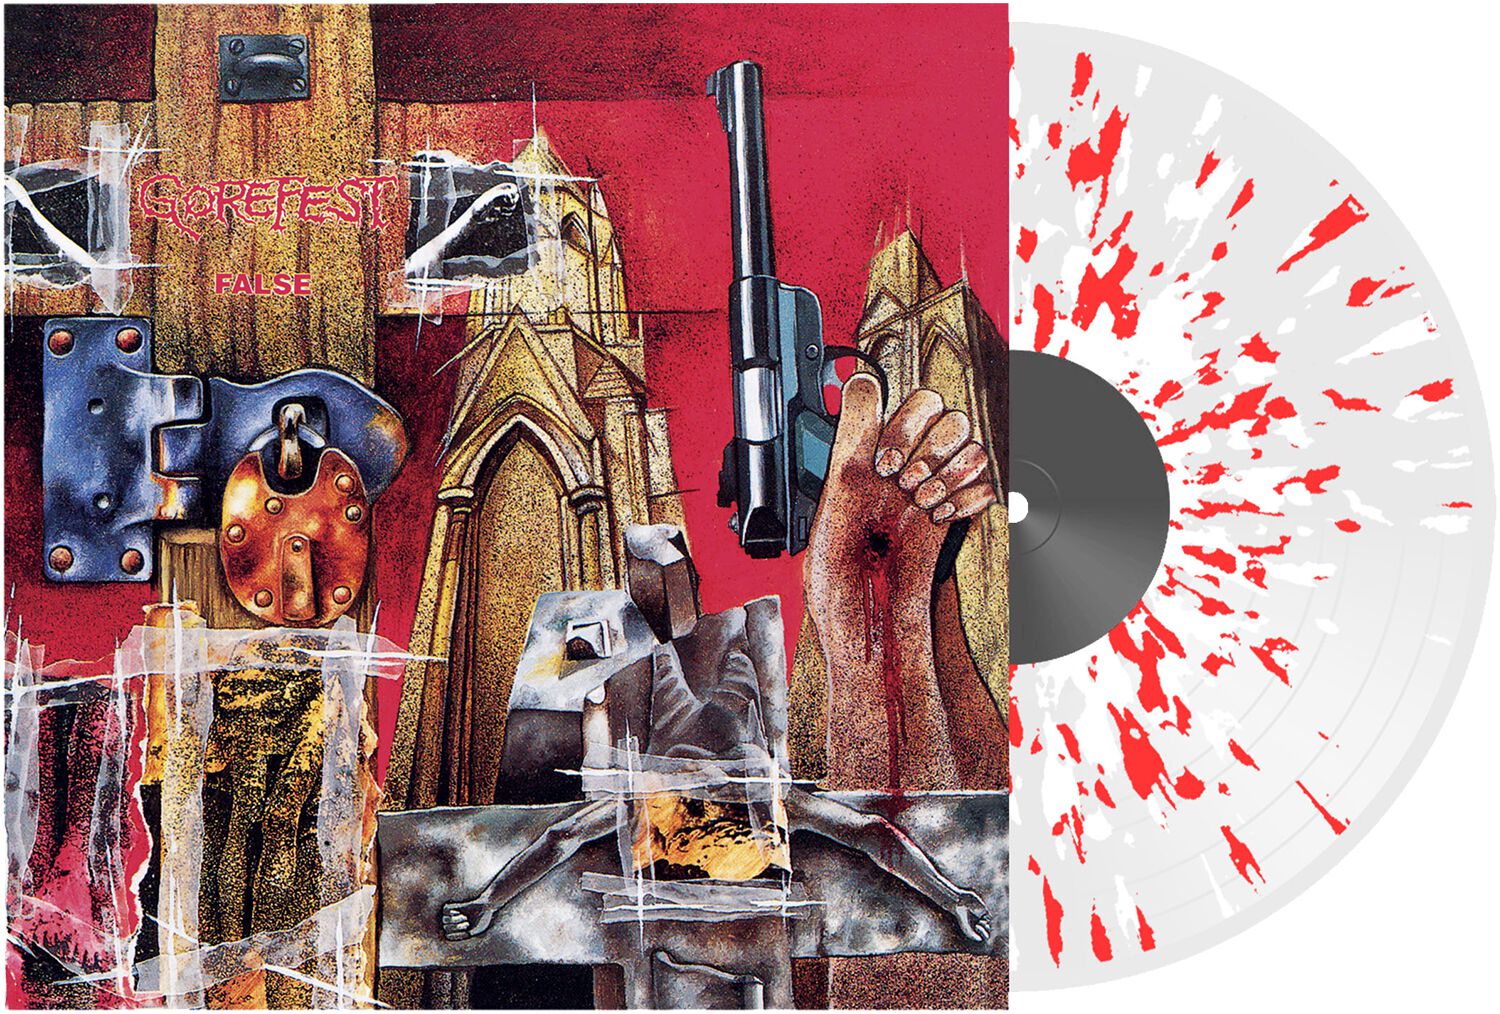 Image of Gorefest False LP splattered